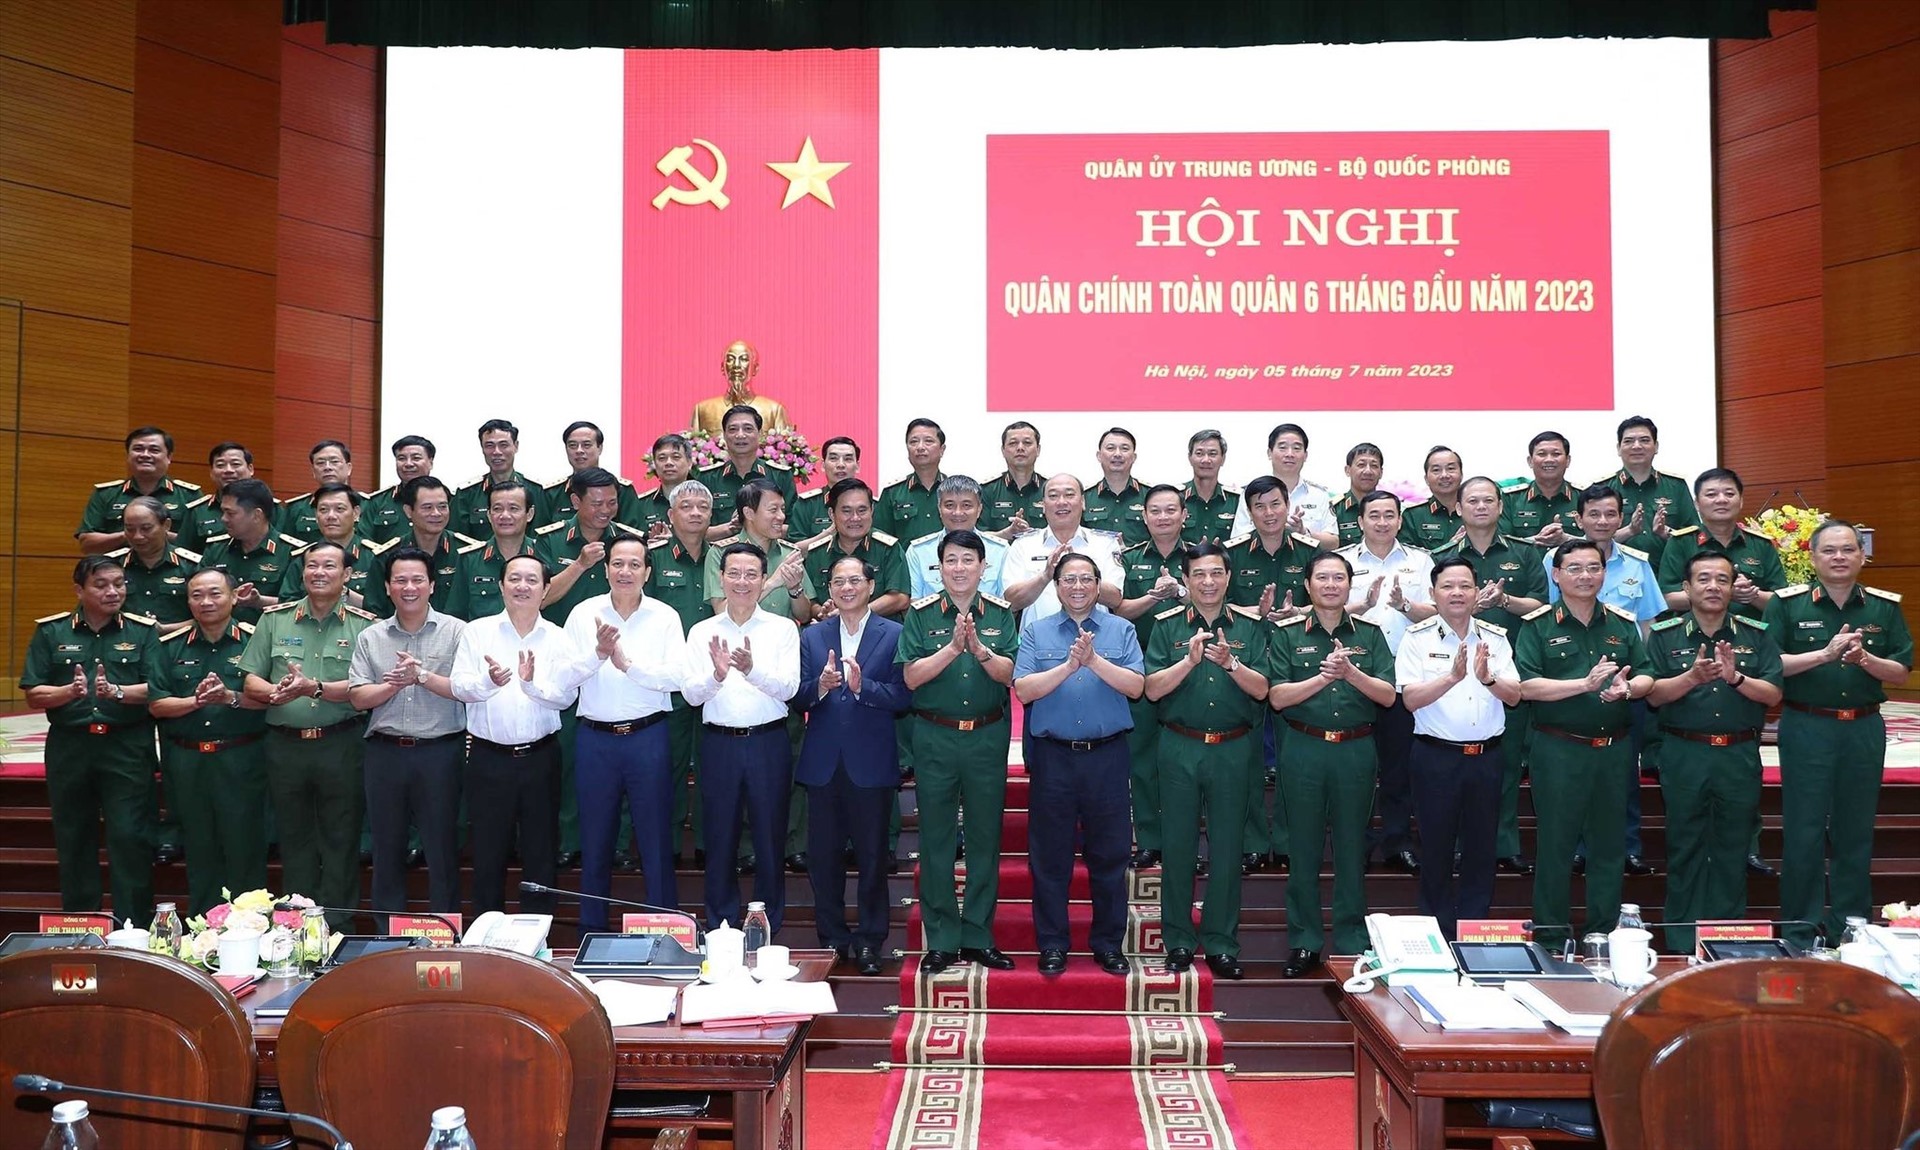 Thủ tướng Phạm Minh Chính và các đại biểu dự hội nghị quân chính toàn quân 6 tháng đầu năm 2023. Ảnh: TTXVN 